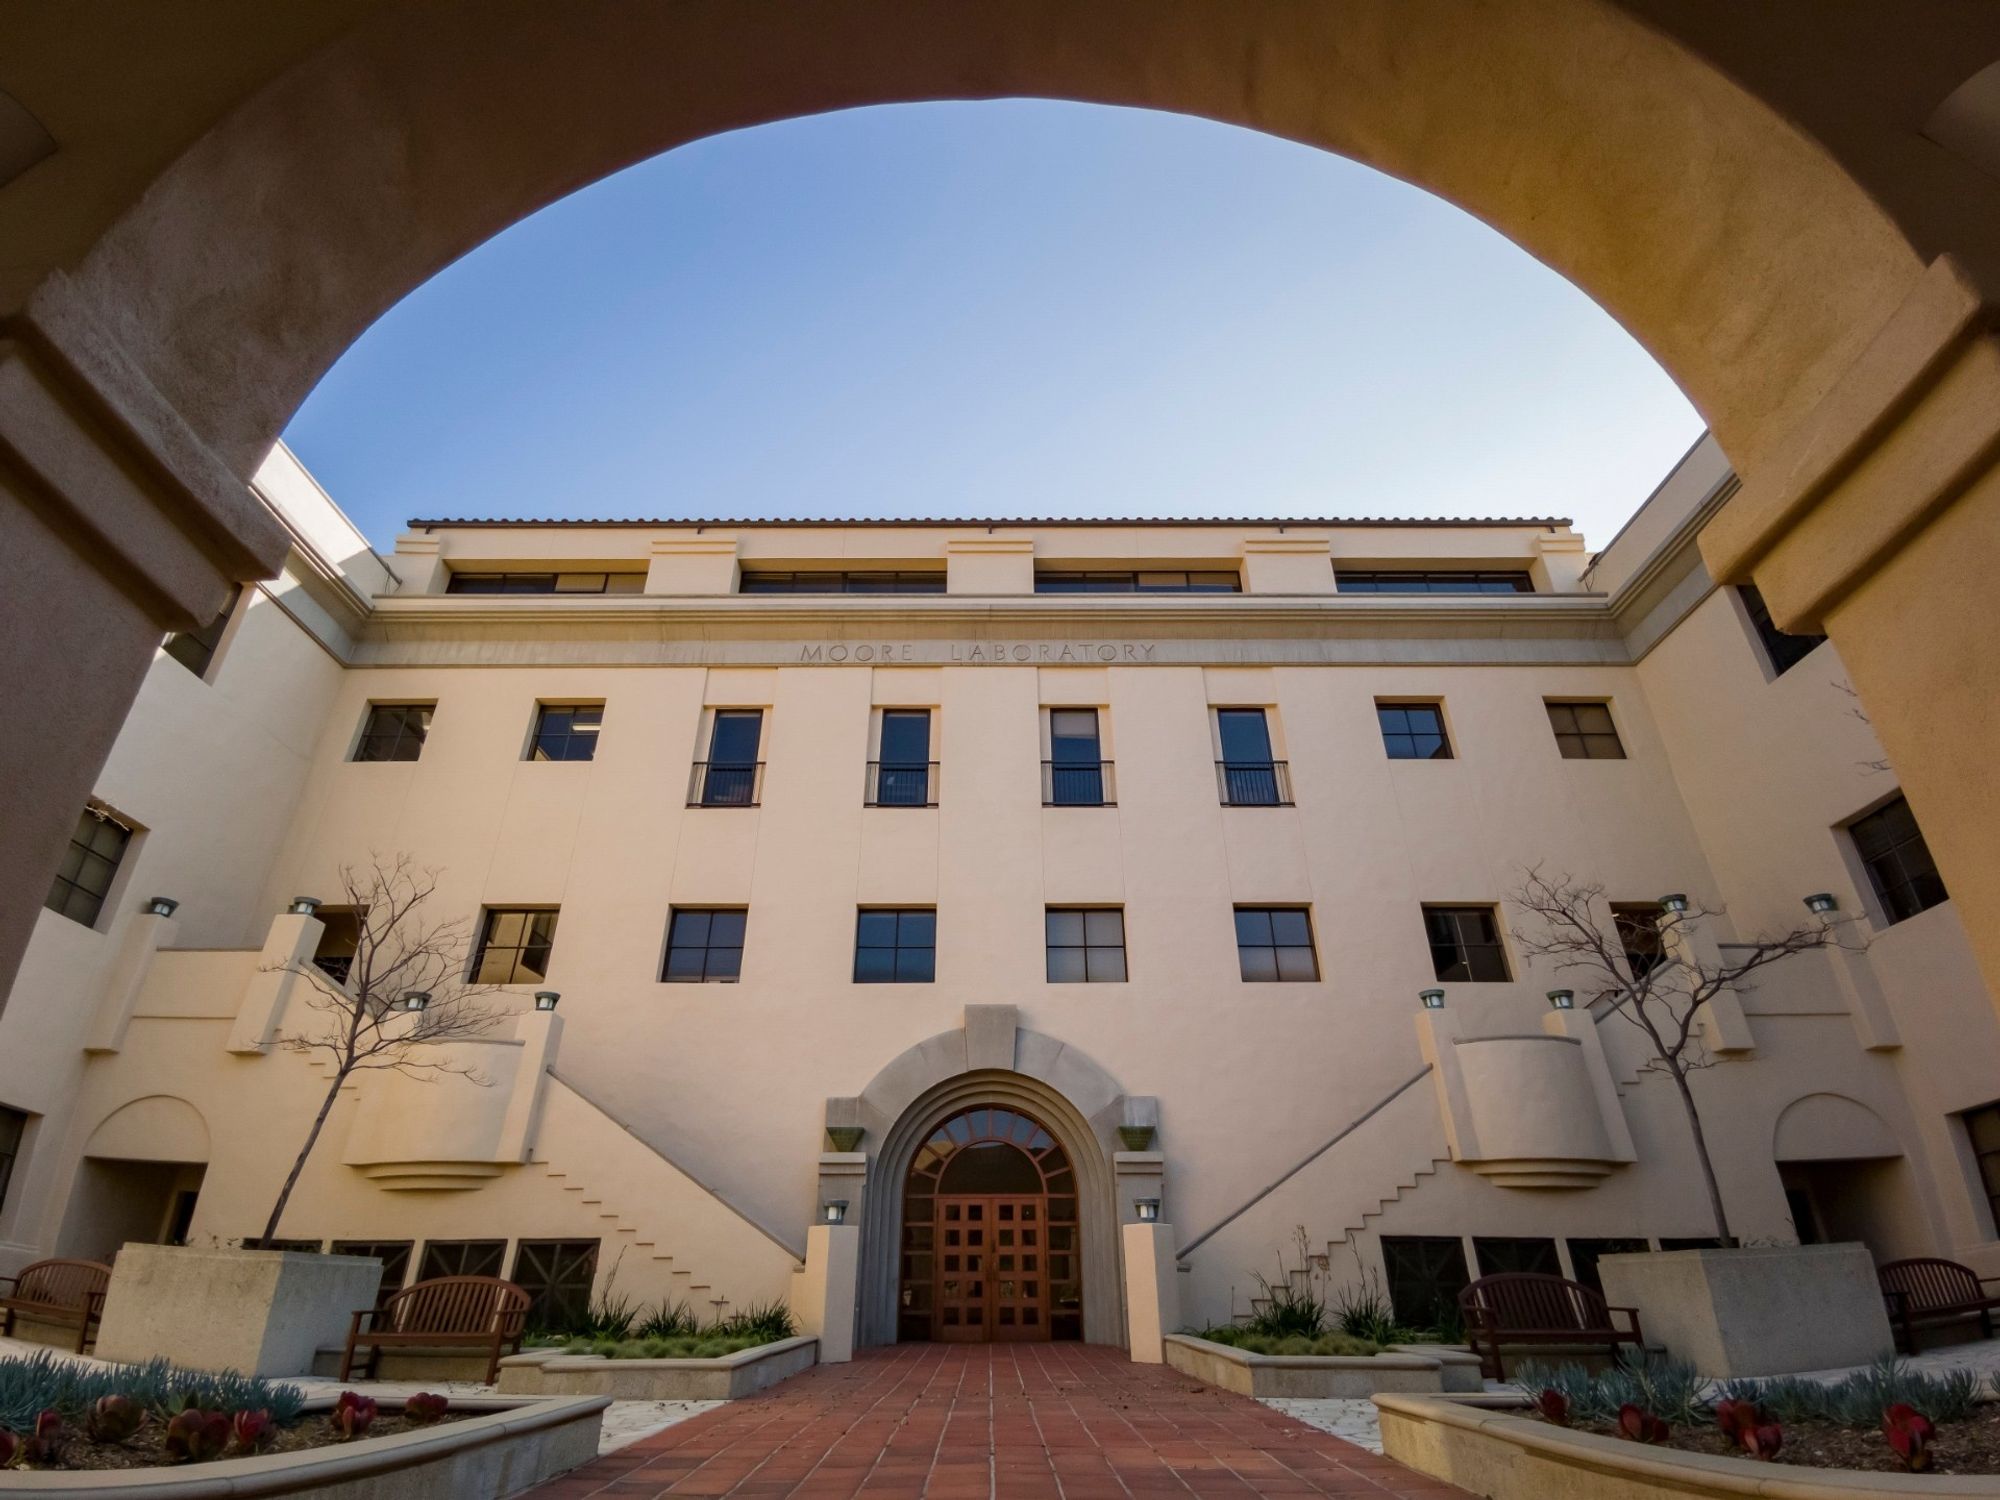 Can Venture Capital Help Unlock 'Underdeveloped' Caltech?